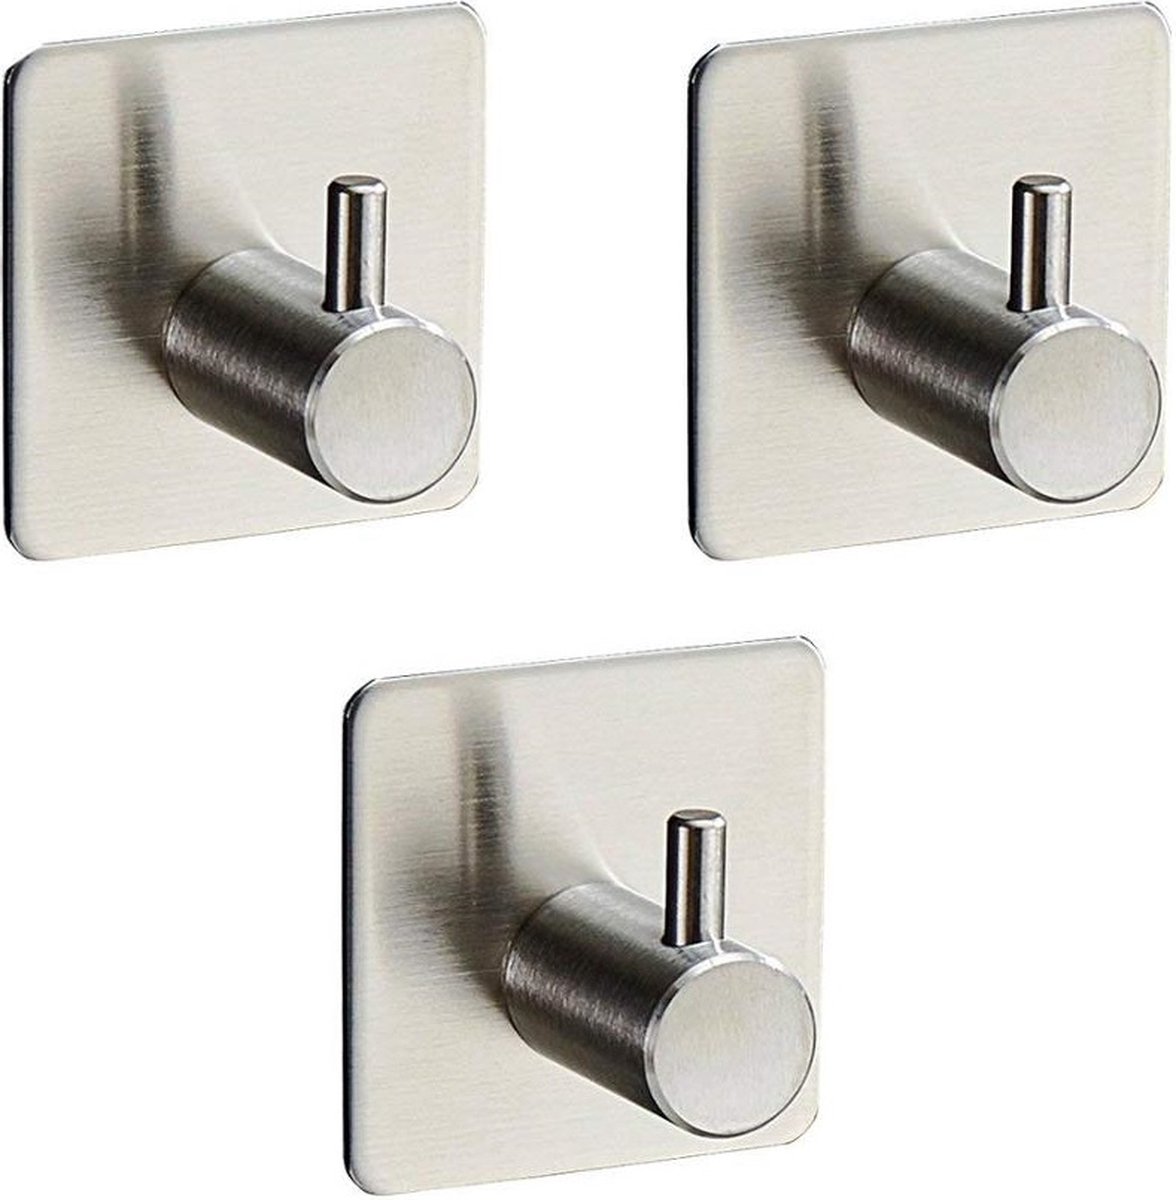 Zelfklevend Handdoekhouders voor badkamer en keuken - Handhoekhaakjes - set van 3 stuks - Zonder boren - Vierkant - Badjas - Theedoek hanger - RVS Zilver